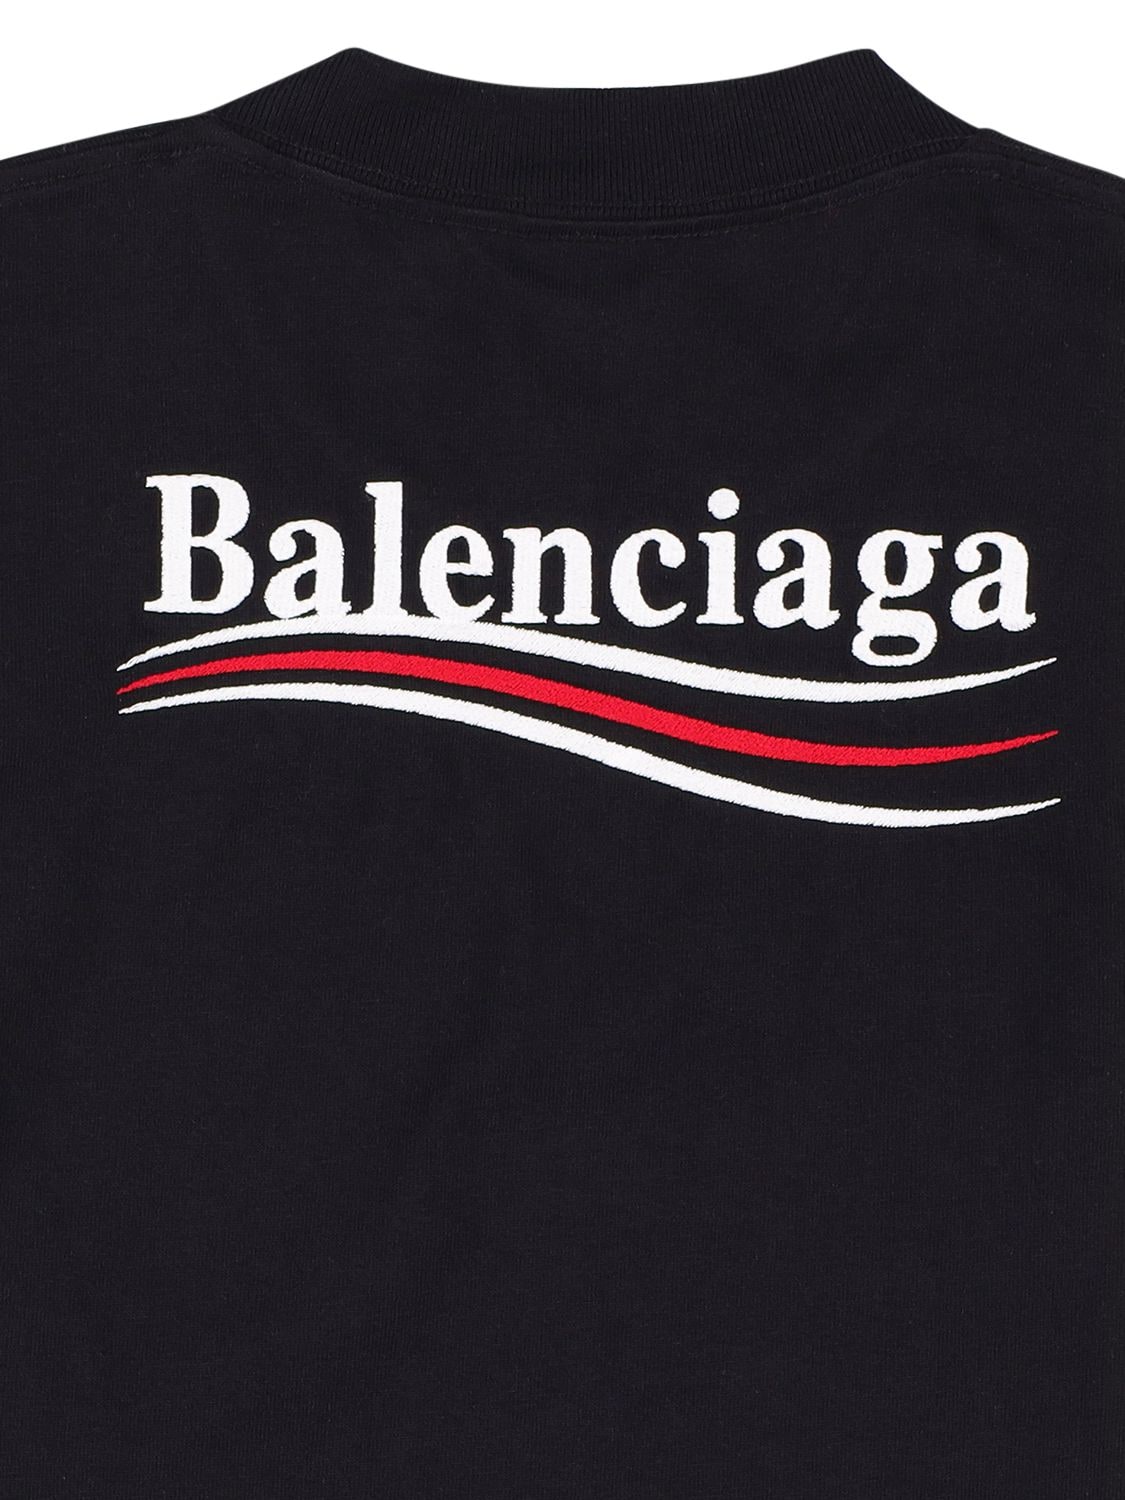 Balenciaga Little Kid's & Kid's Political Campaign Logo T-shirt In ...